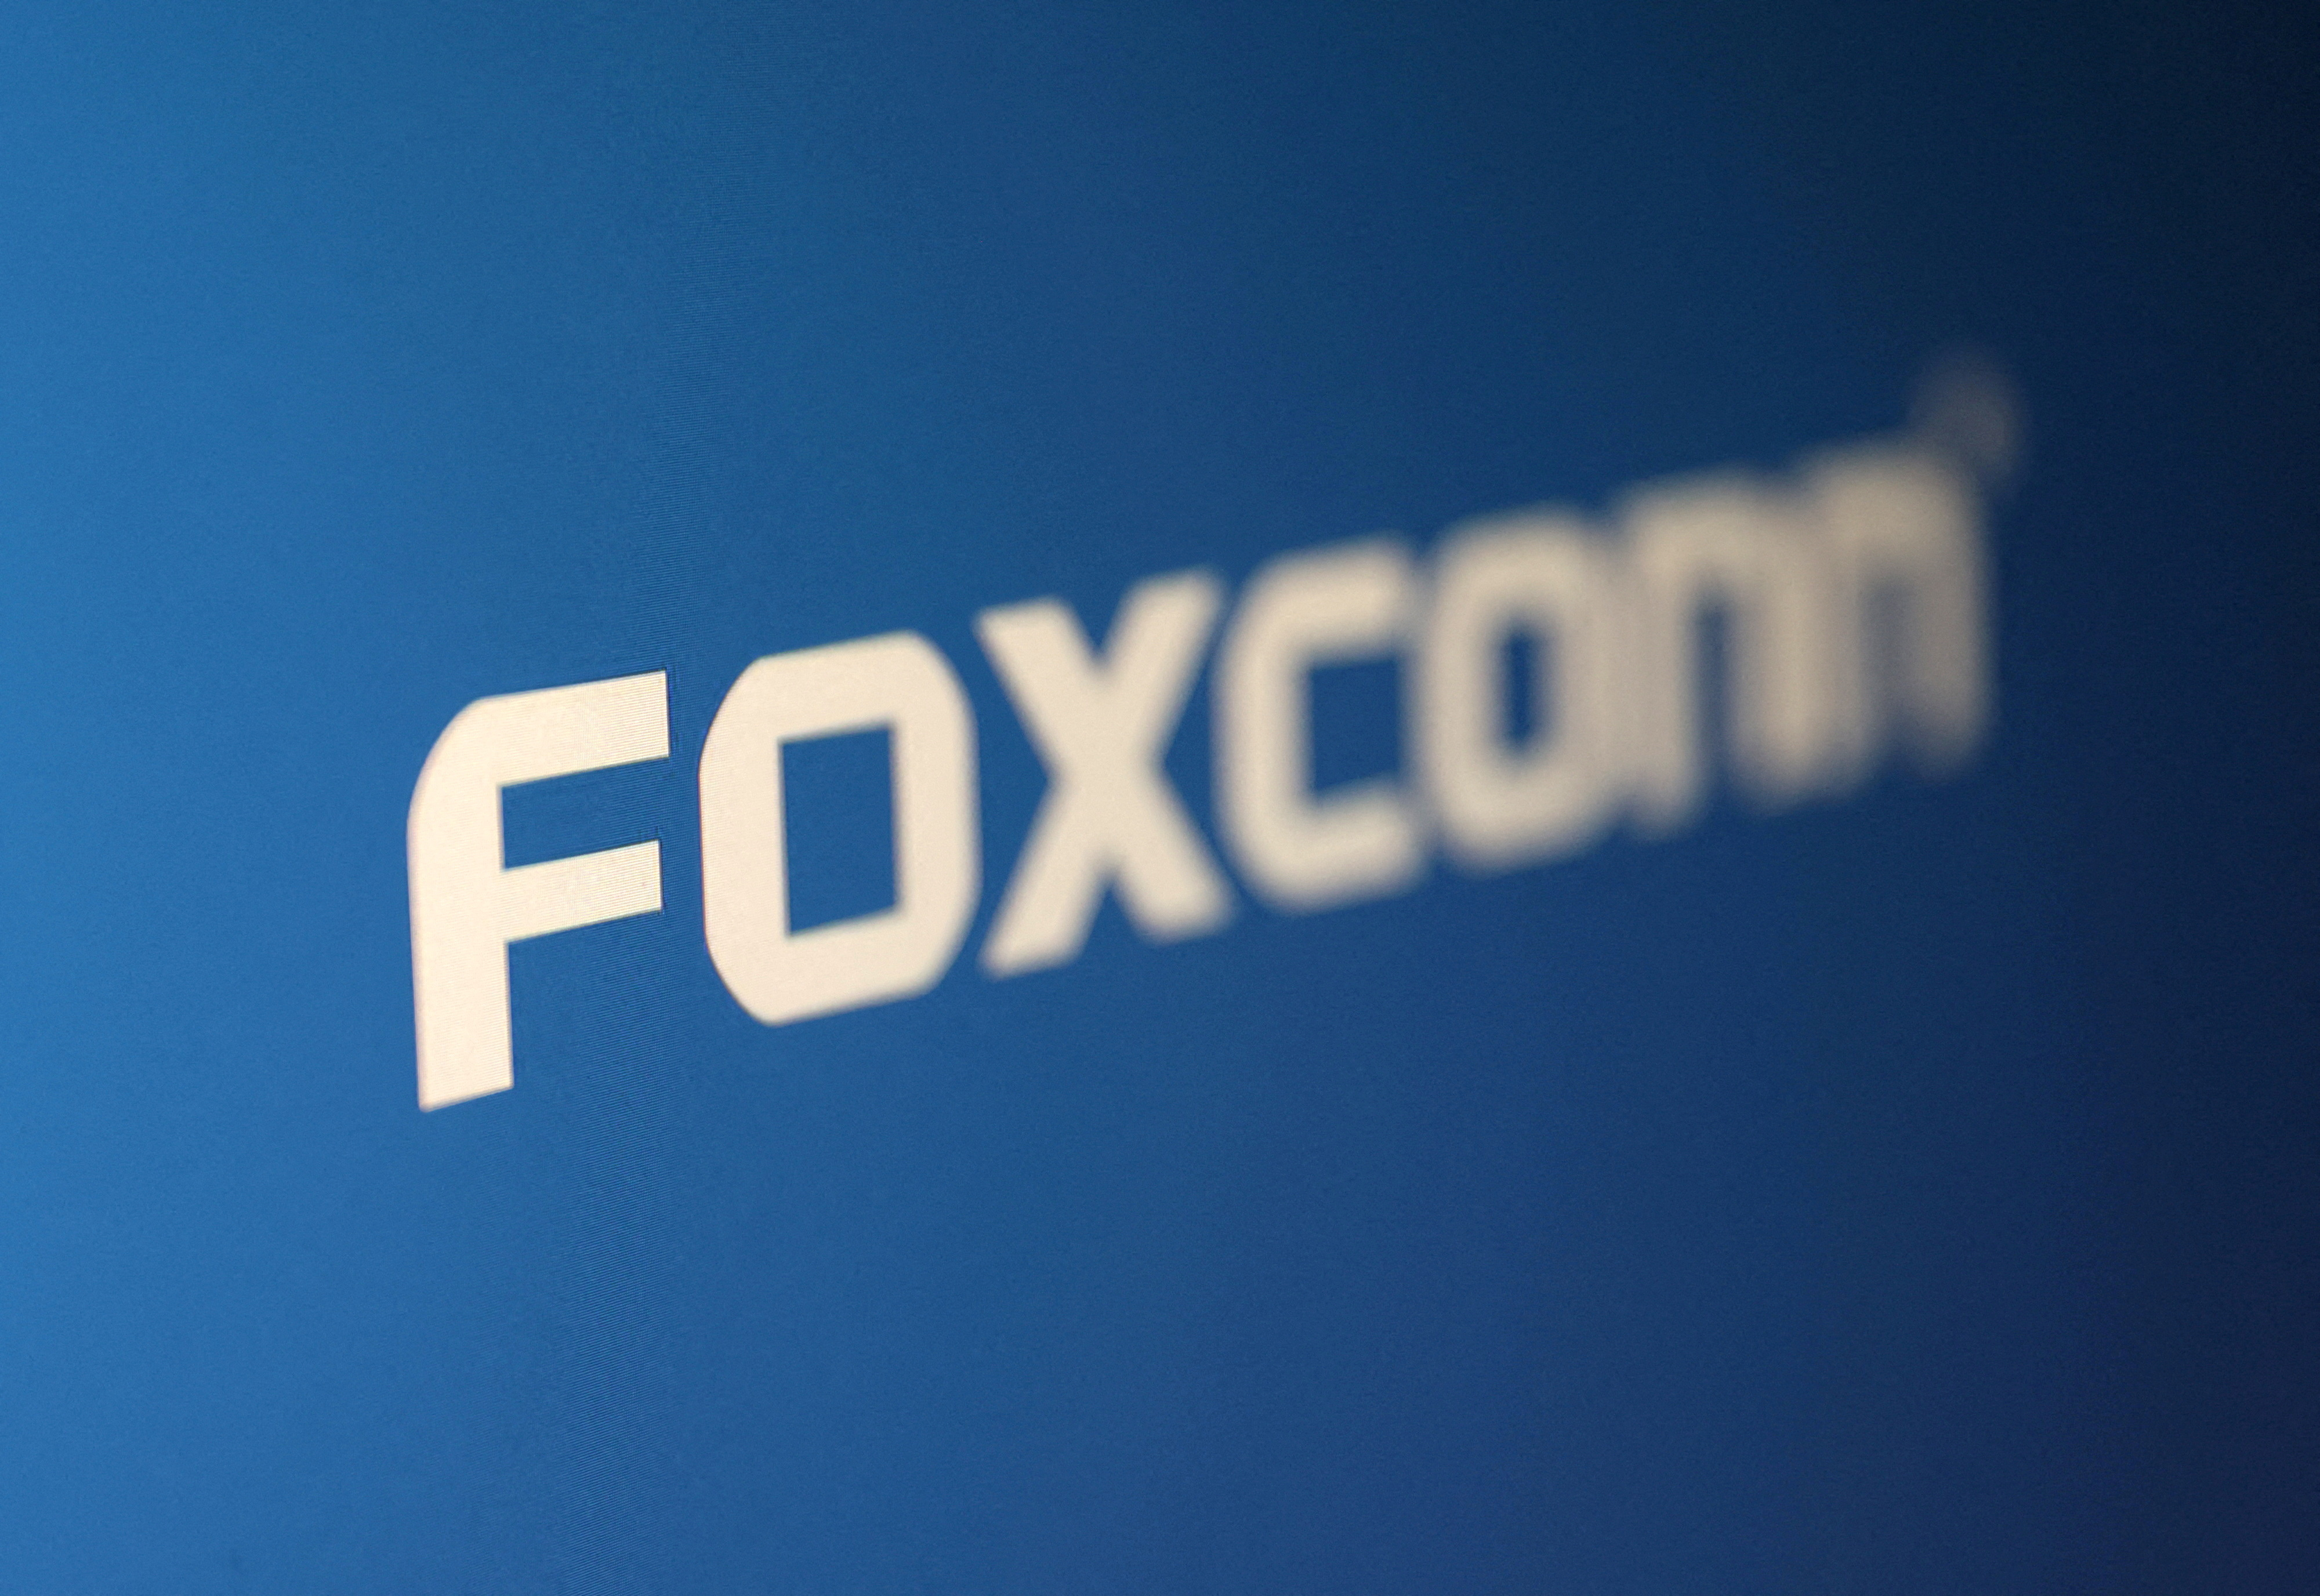 Le fabricant d'iPhones, Foxconn, voit son bénéfice exploser grâce à l'IA... mais déçoit ses investisseurs